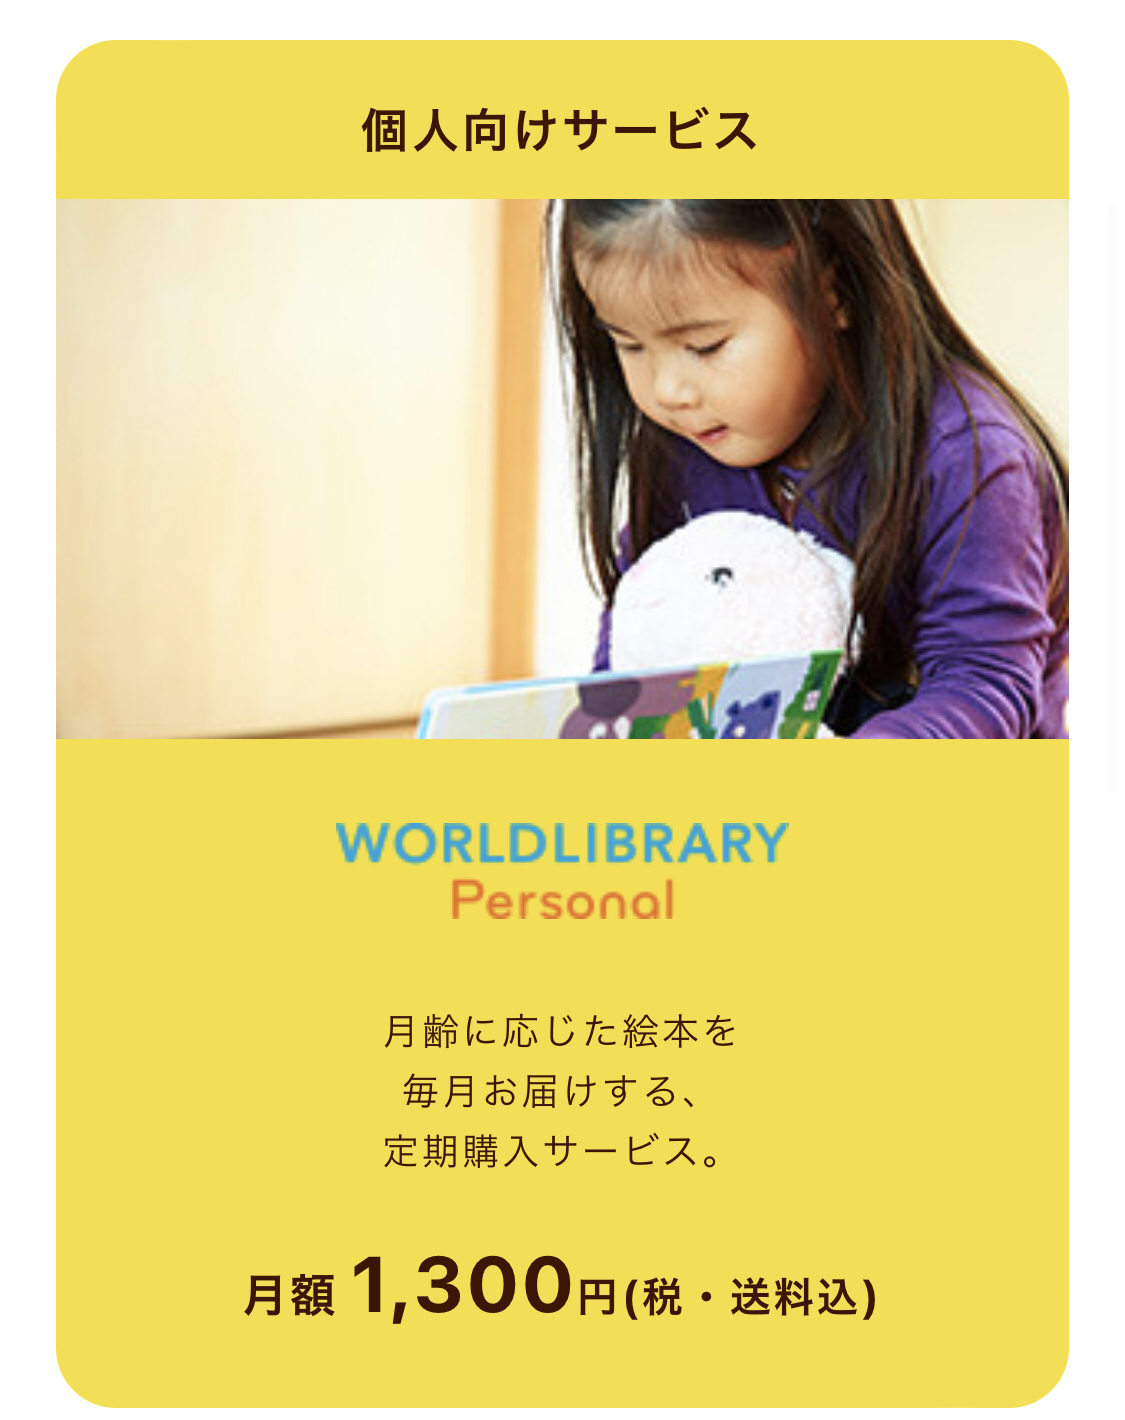 SERVICE　WORLDLIBRARY